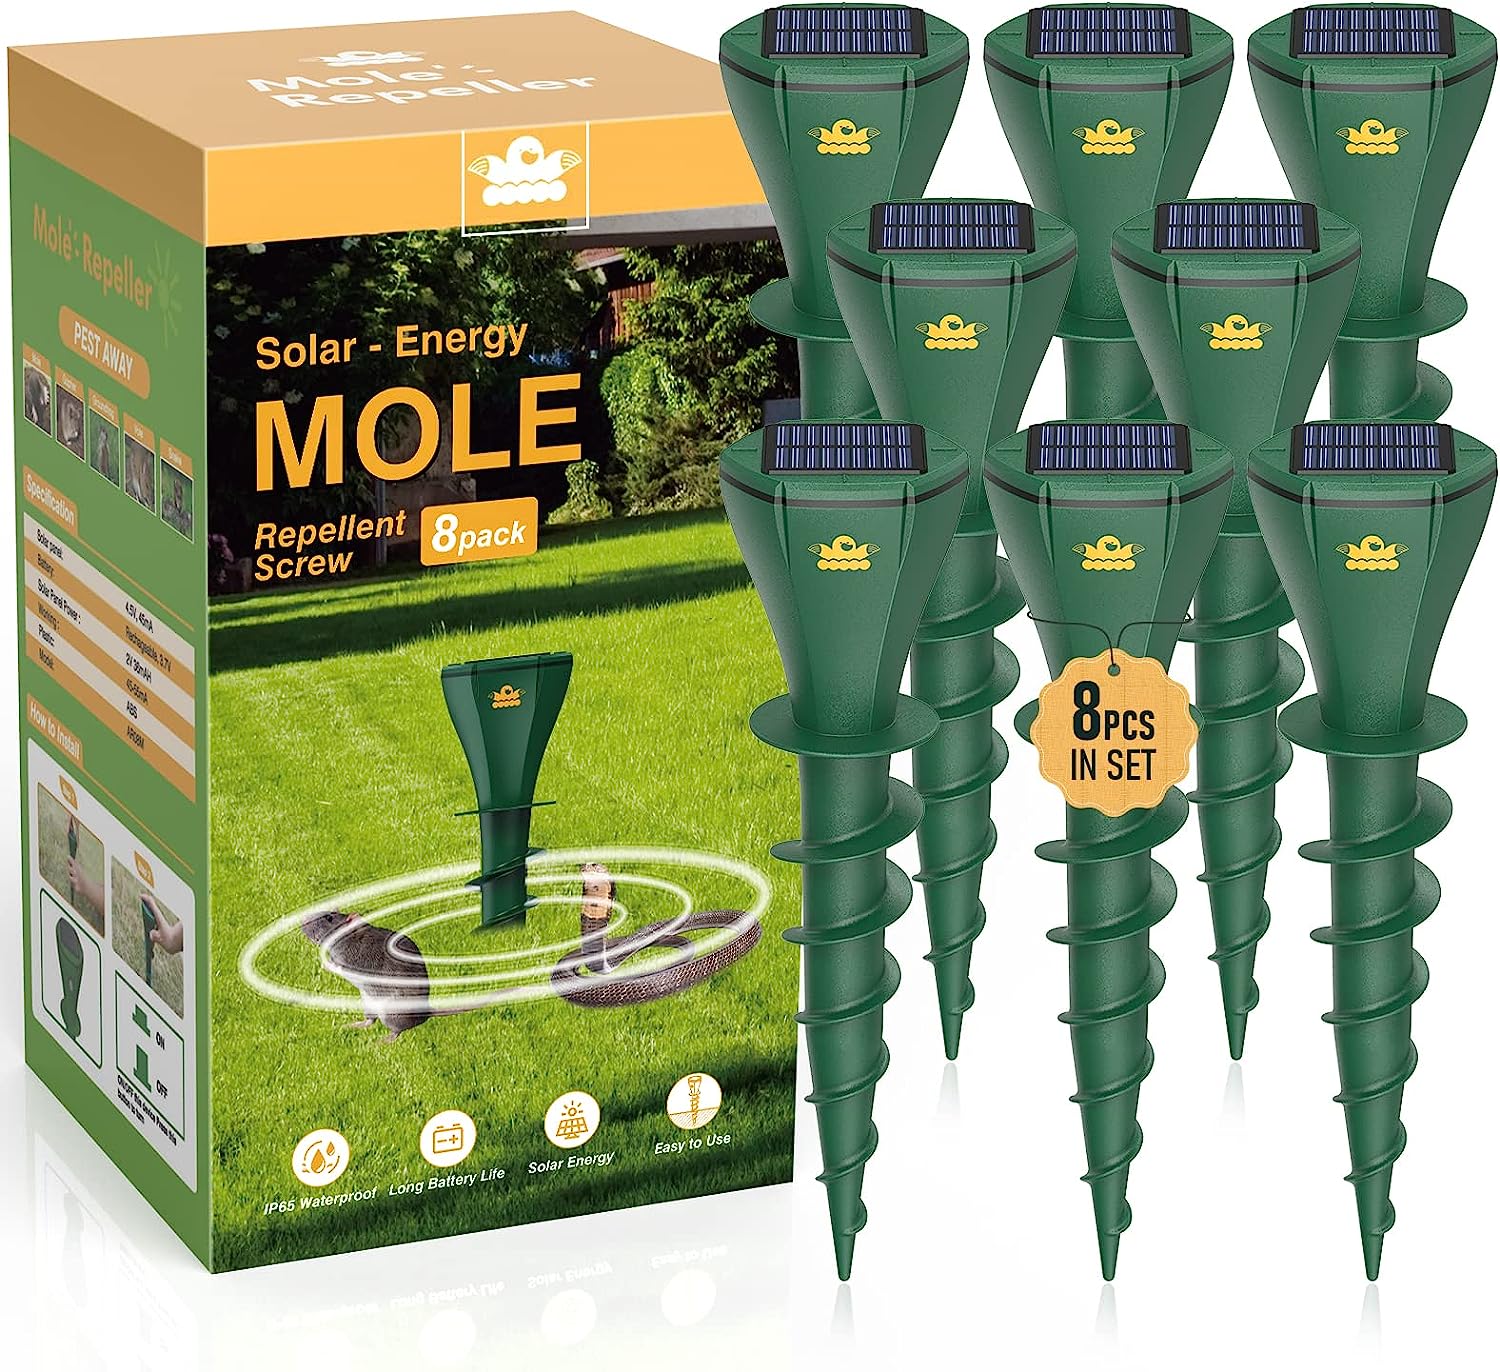 Mole Repellent Screw for Lawns, Mole Traps Solar [...]